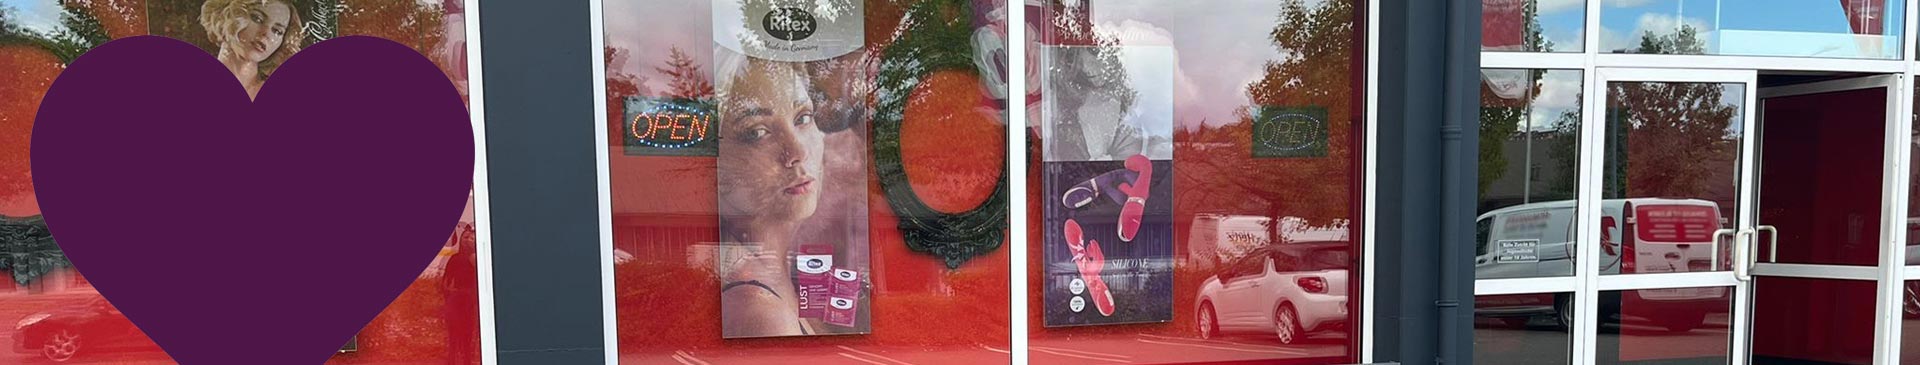 ErotikStore & Sexkino nahe der B8 in Würzburg